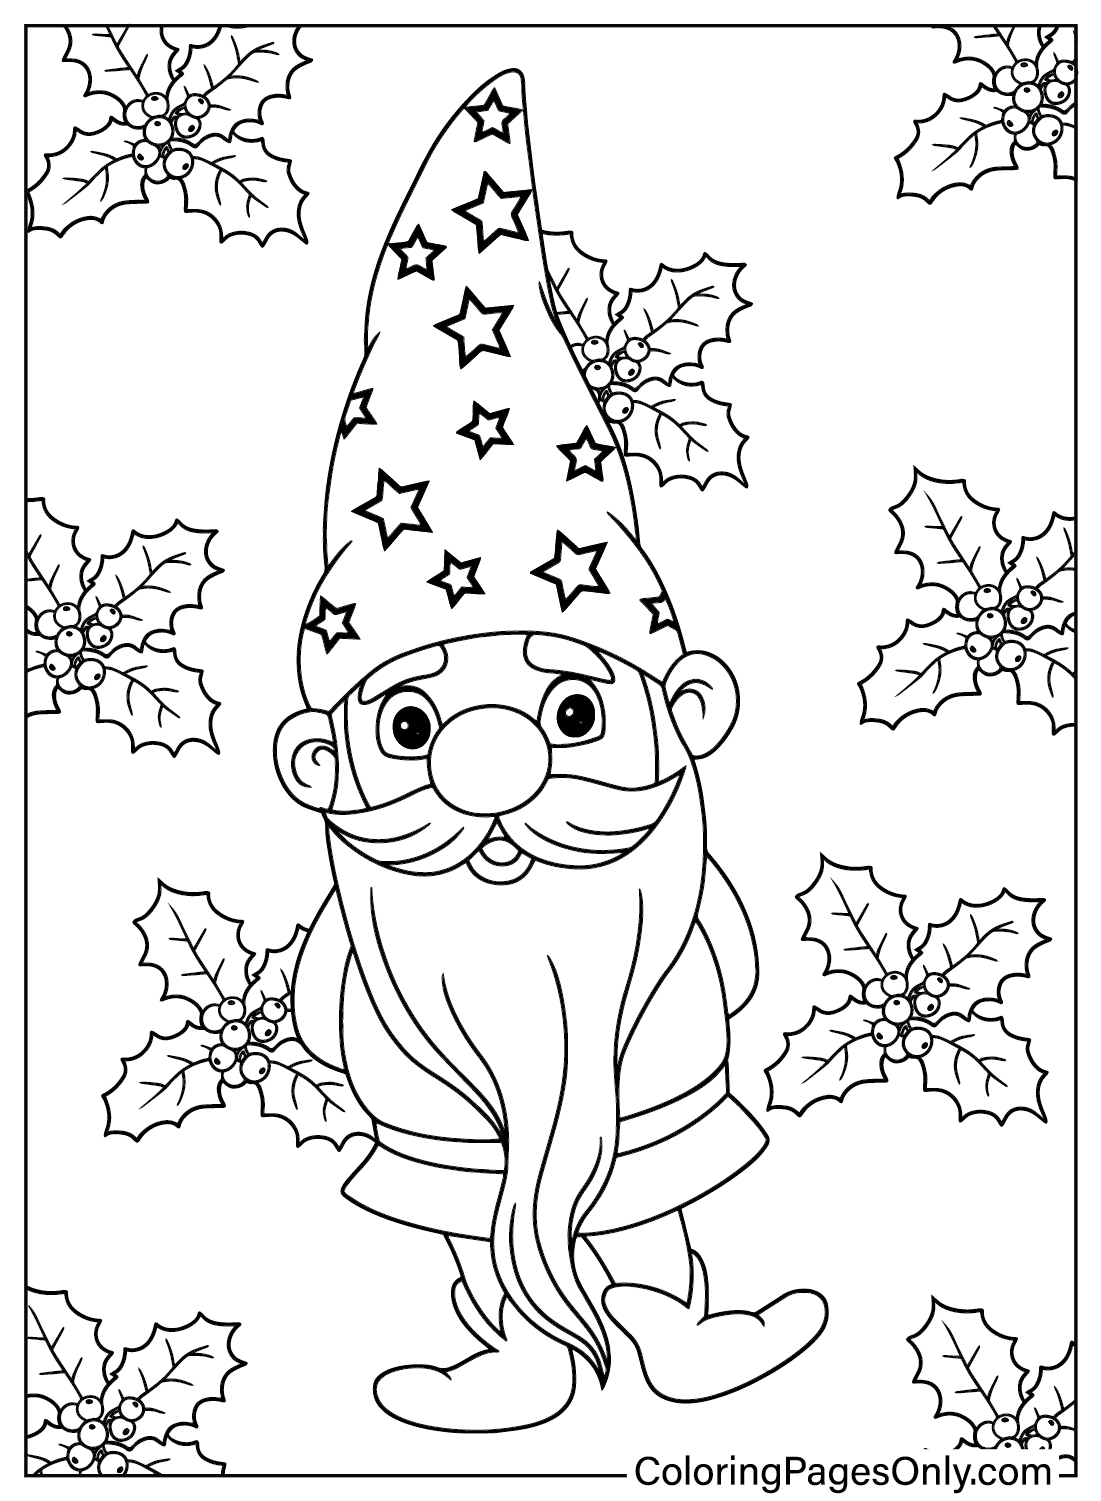 Página para colorir do Gnome do Gnome